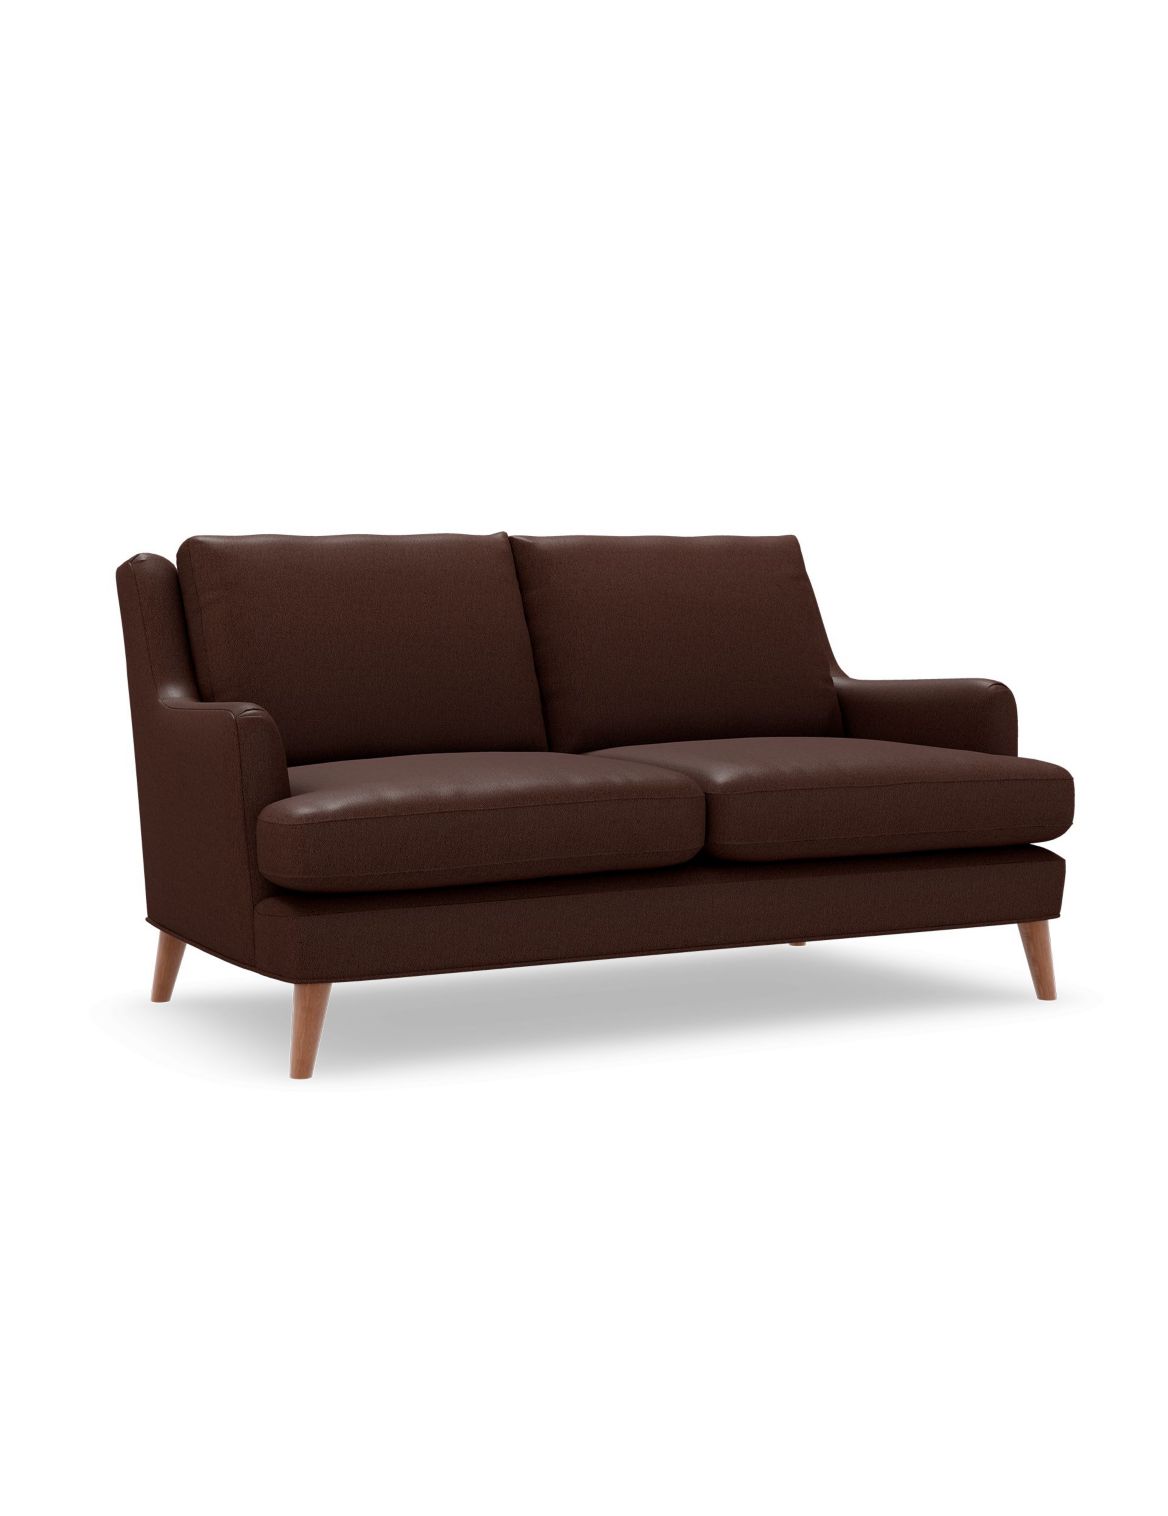 Ashton Small Sofa brown